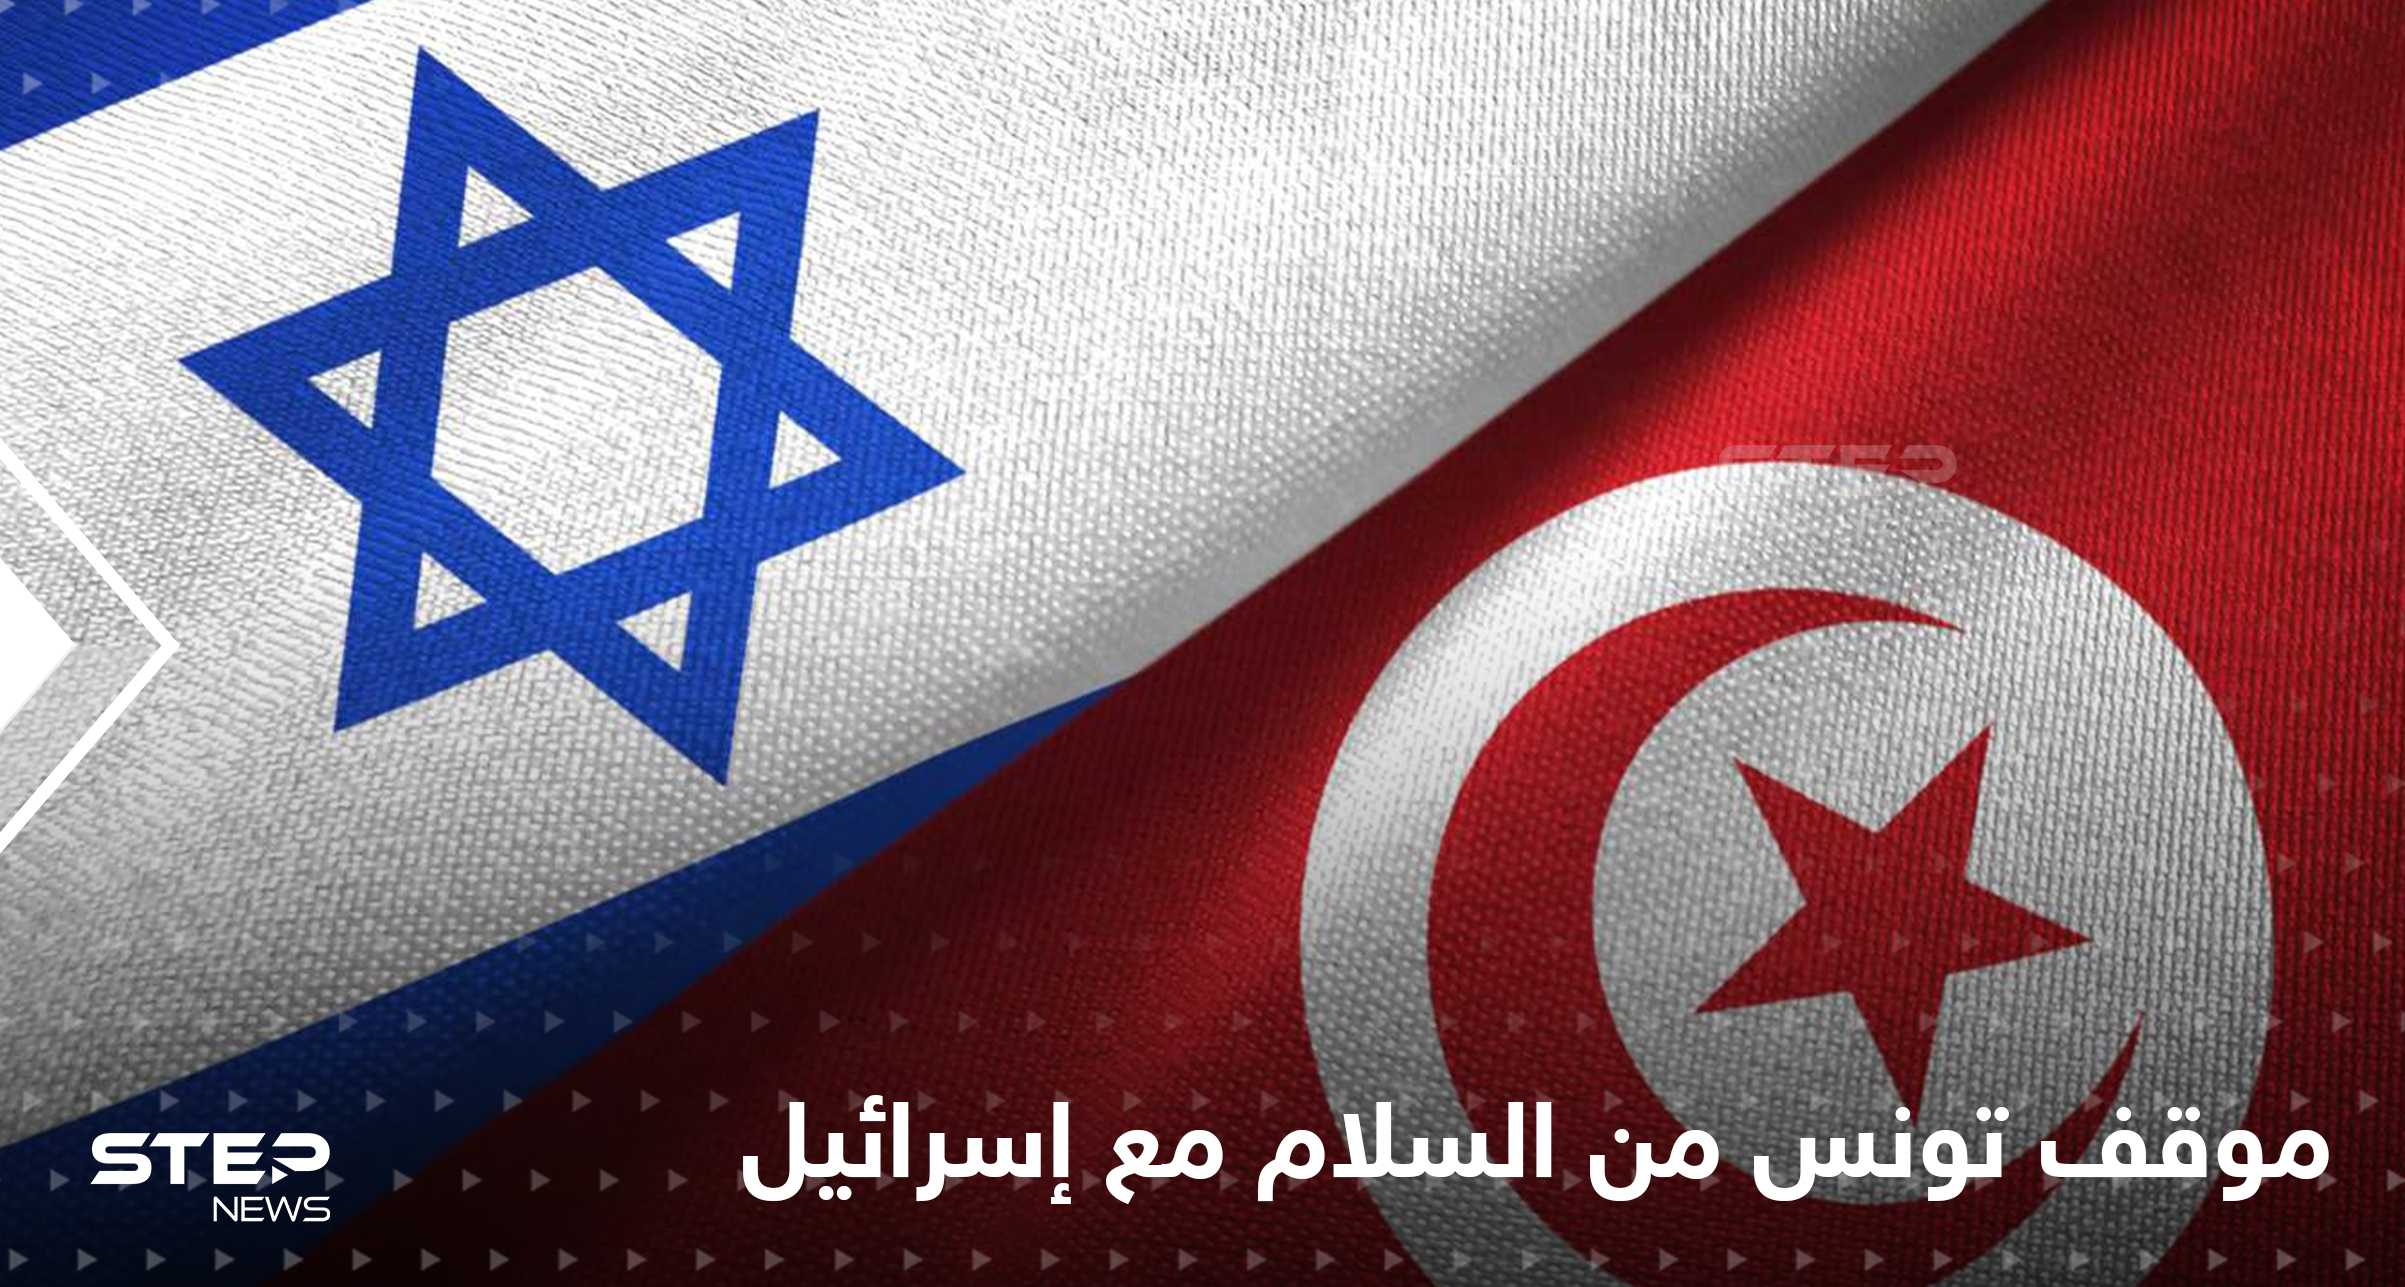 تونس تكشف موقفها من عقد اتفاق سلام مع إسرائيل